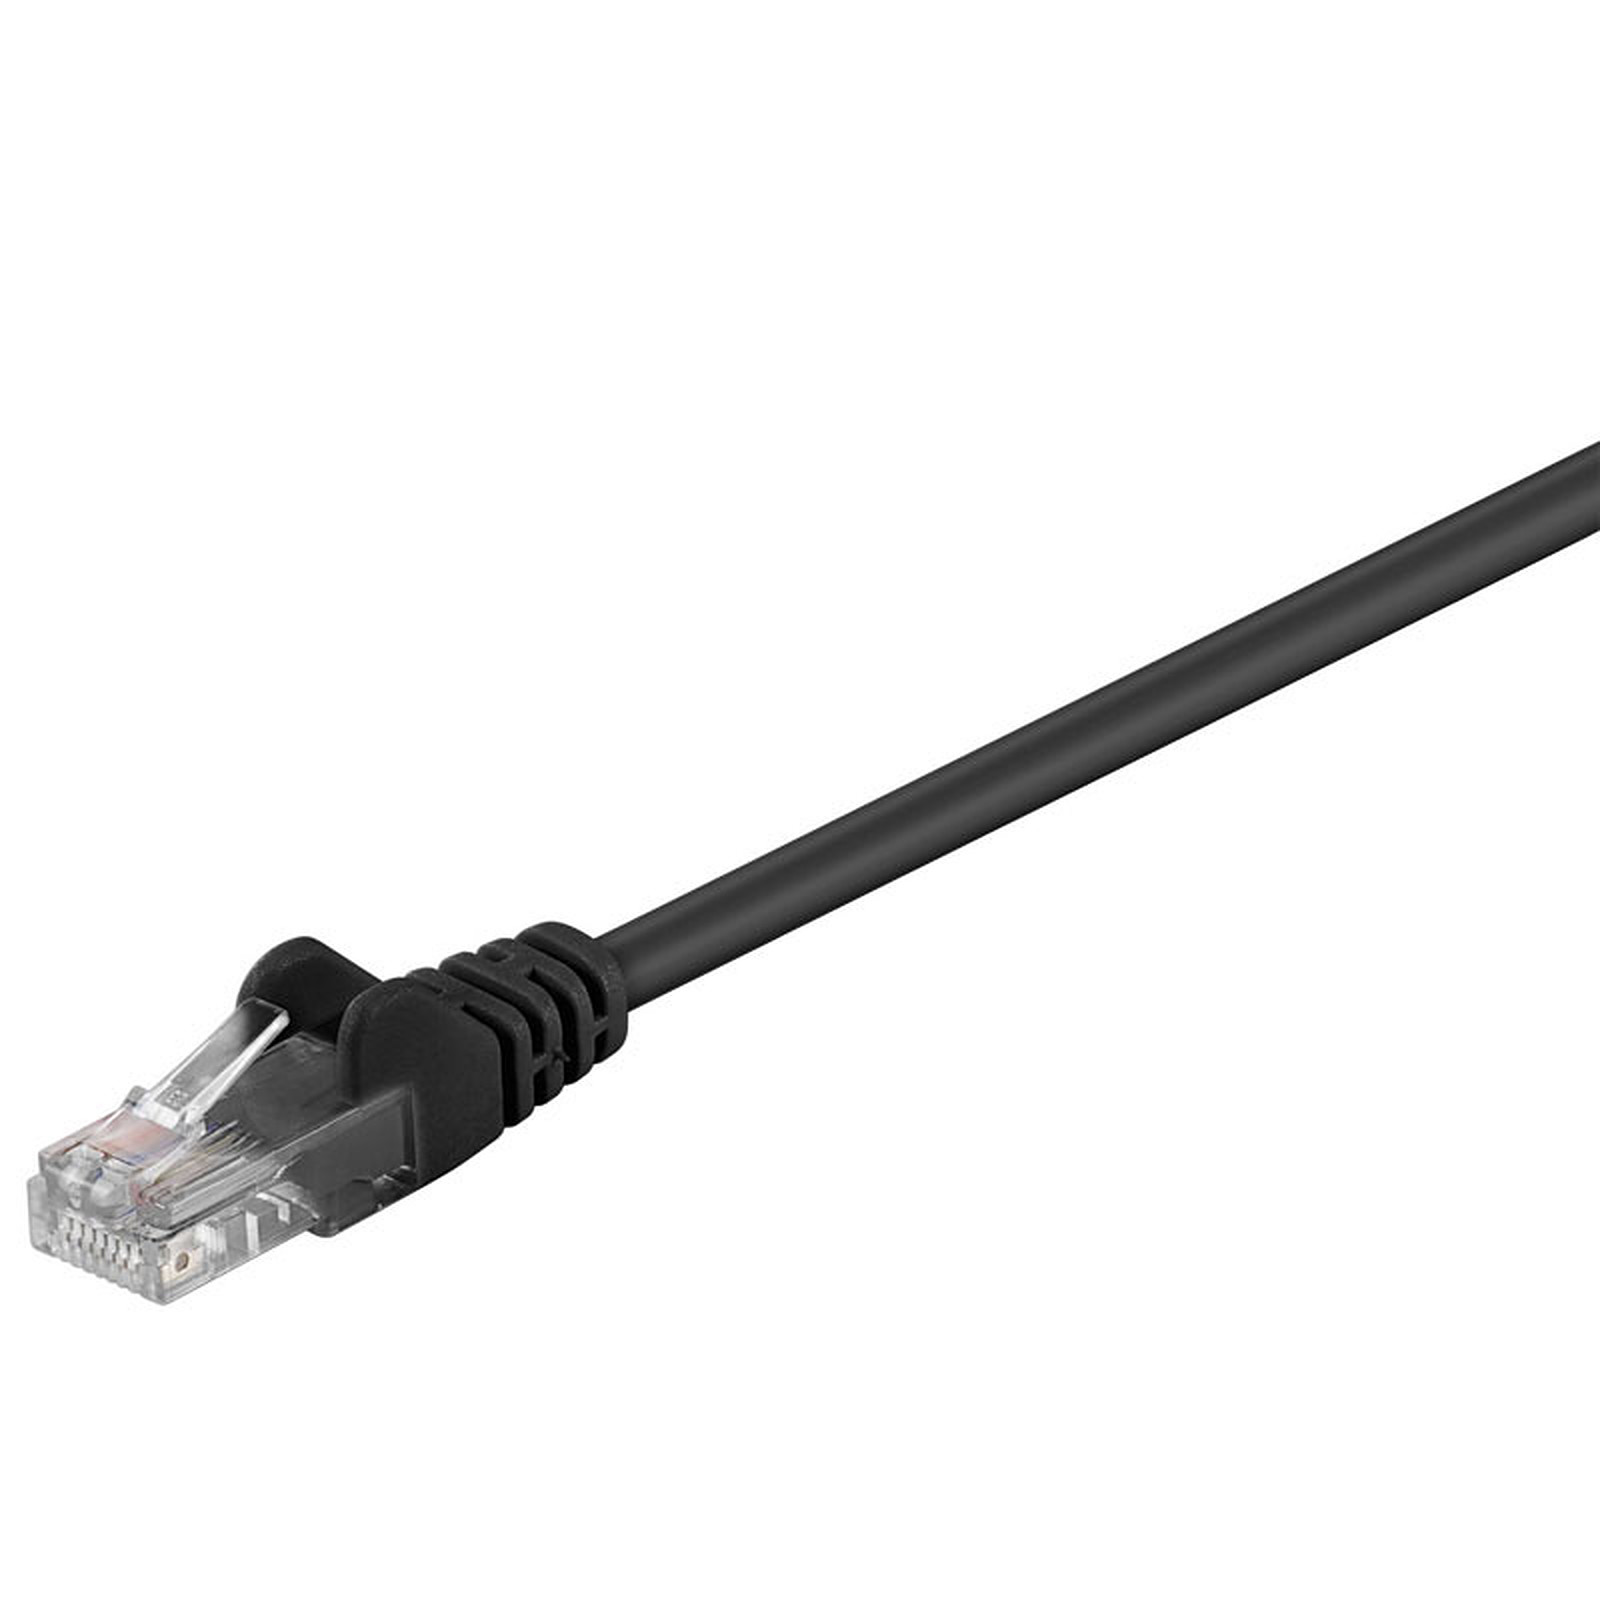 Cable RJ45 categorie 5e U/UTP 1 m (Noir) - Cable RJ45 Generique